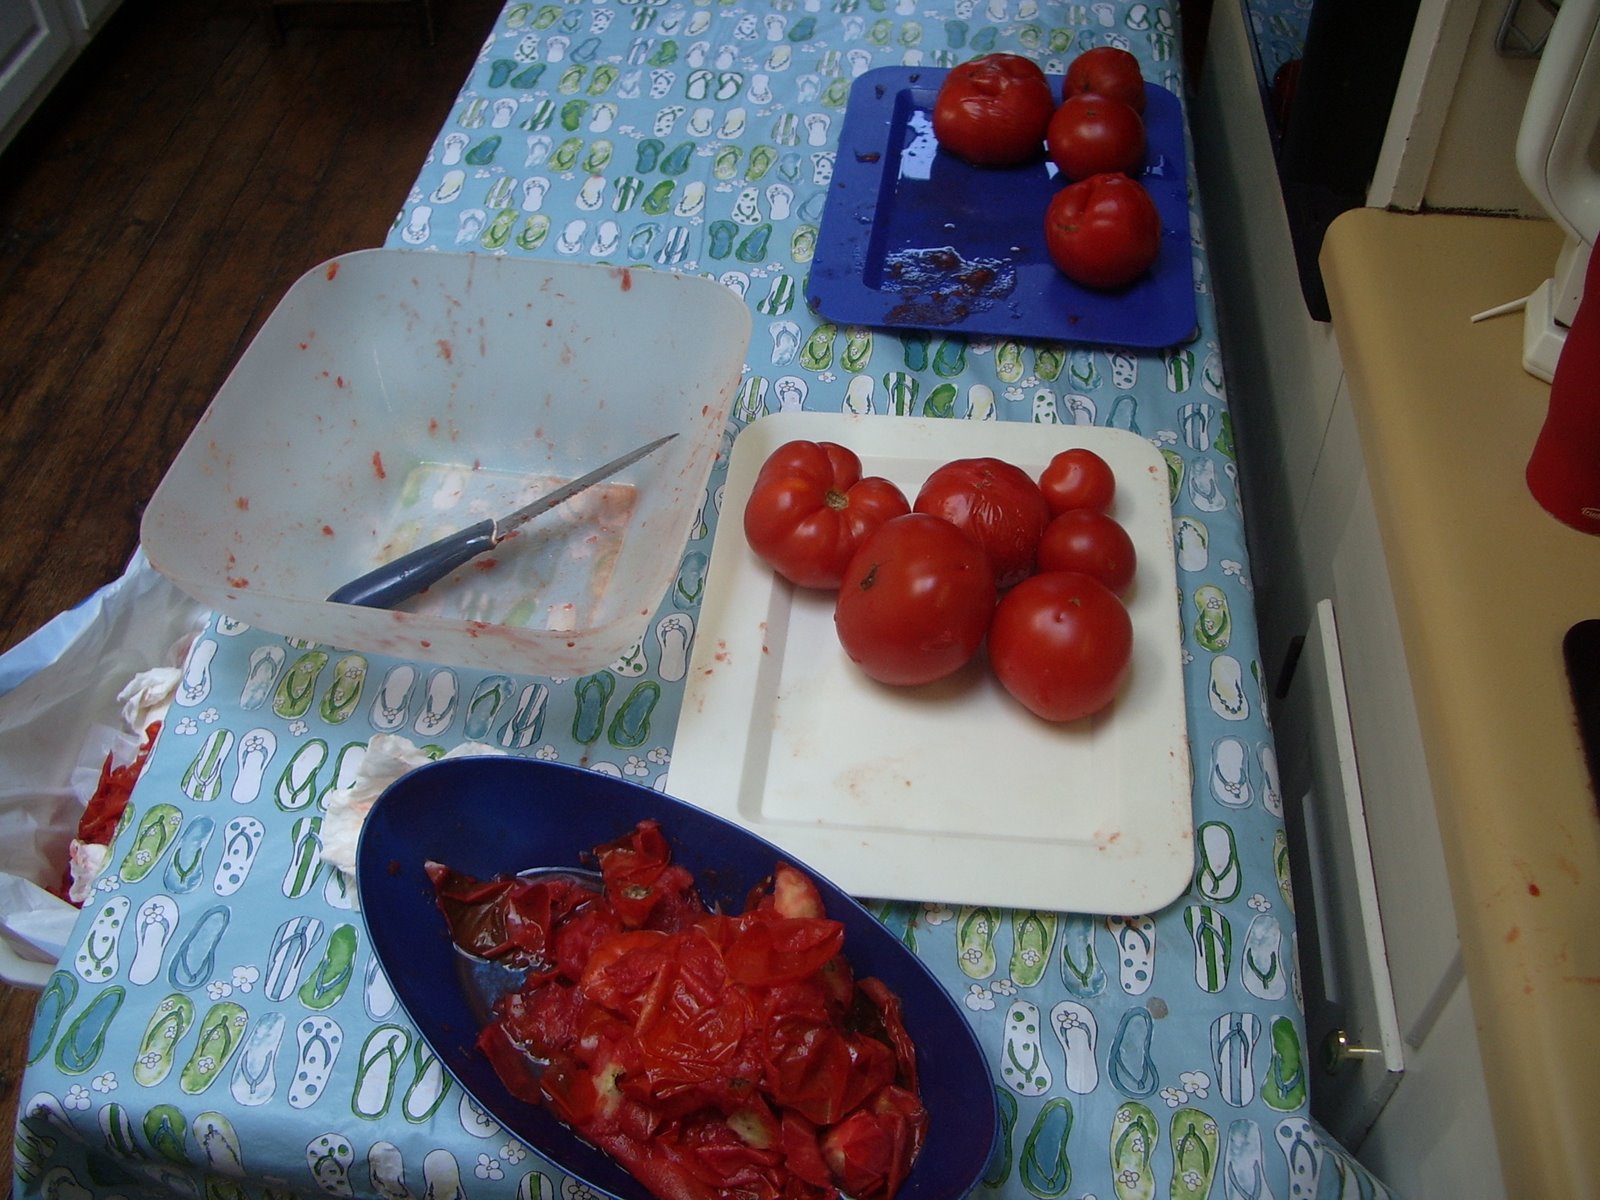 [Turkeys-tomatoes-salsa+107.JPG]